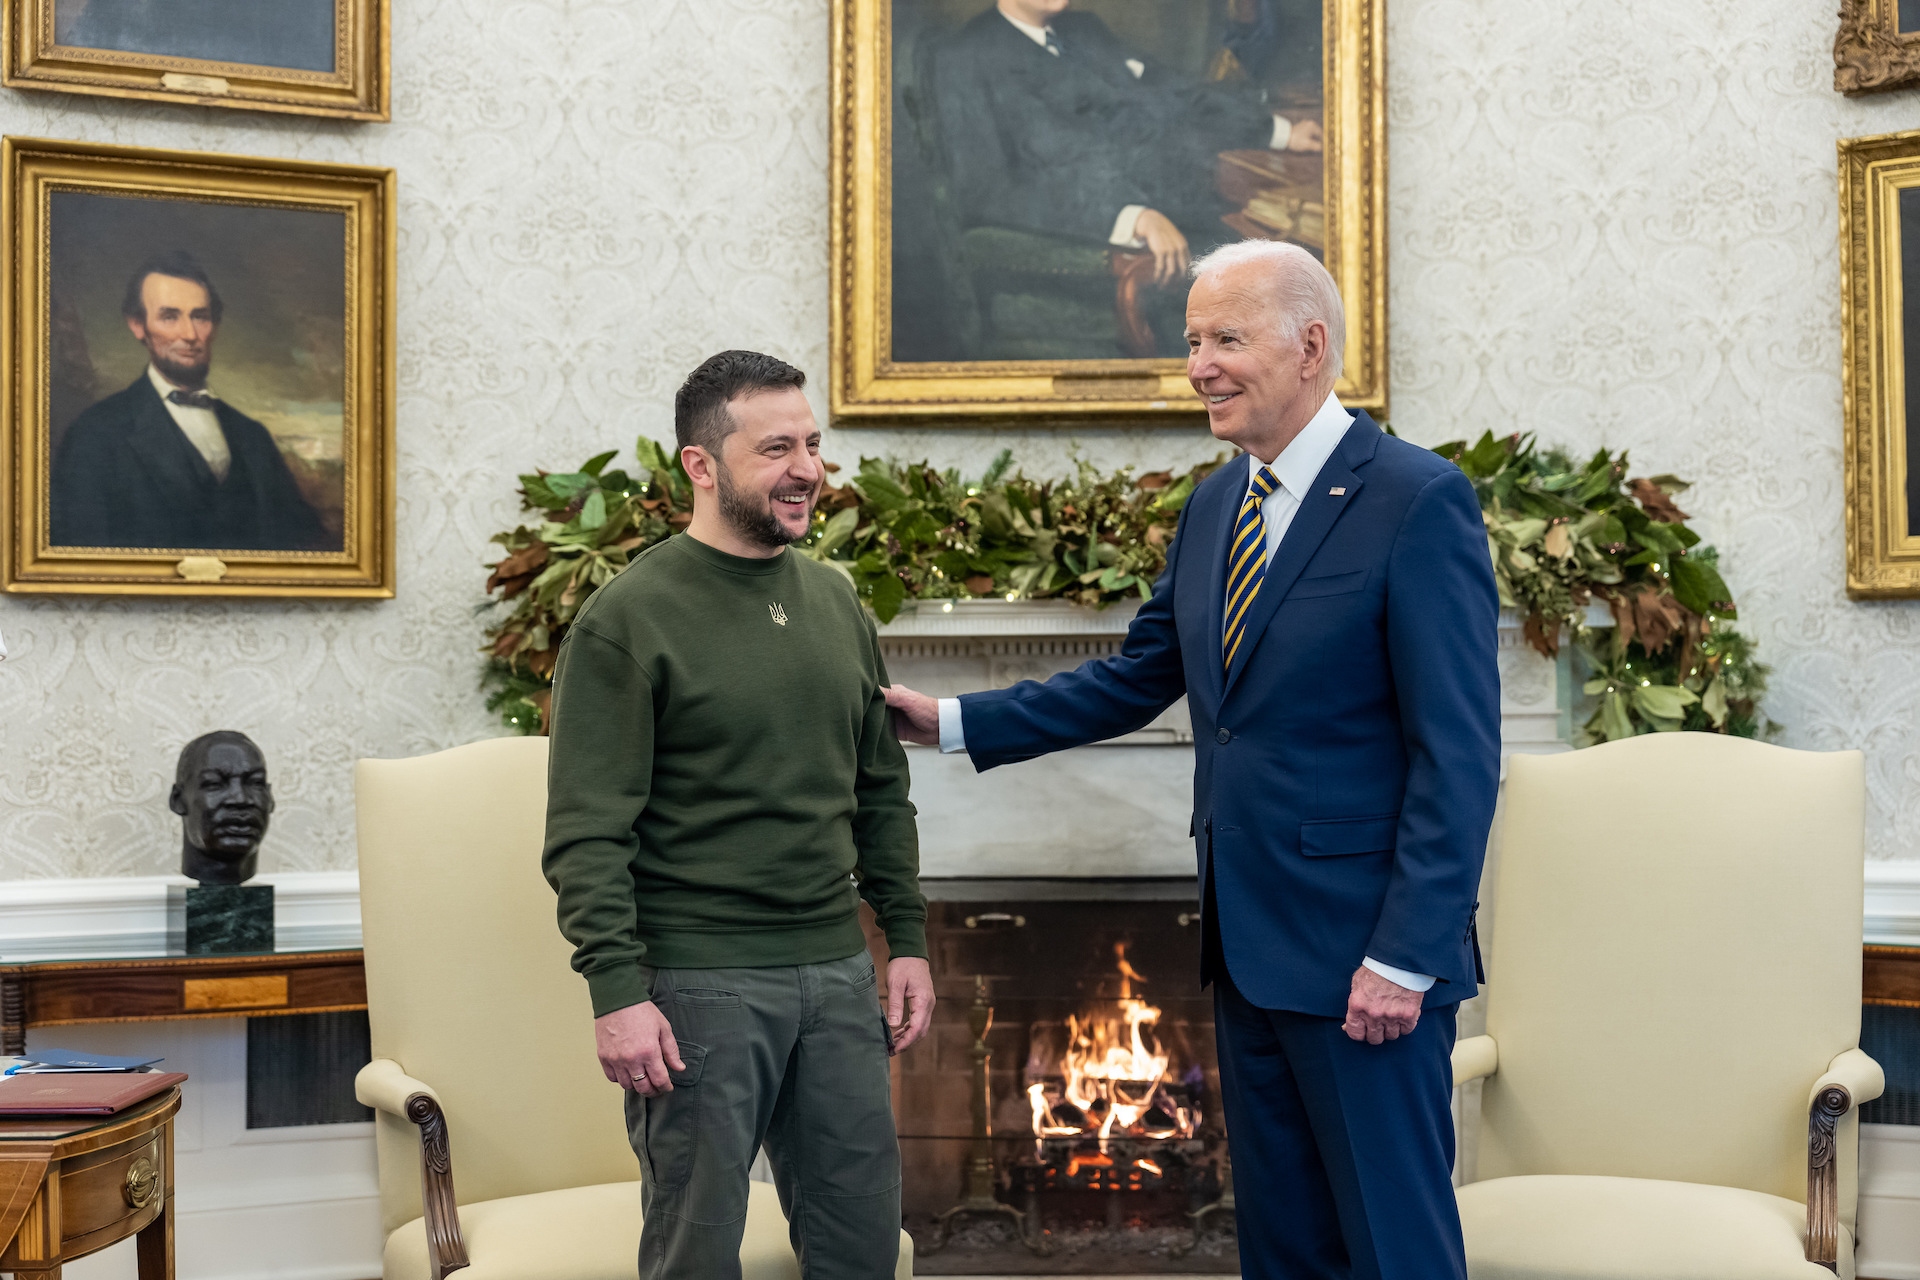 Bild: President Joe Biden and President Volodymyr Zelensky in the Oval Office of the White House 2.jpg, The White House, Public domain, via Wikimedia Commons (Bildgröße verändert)